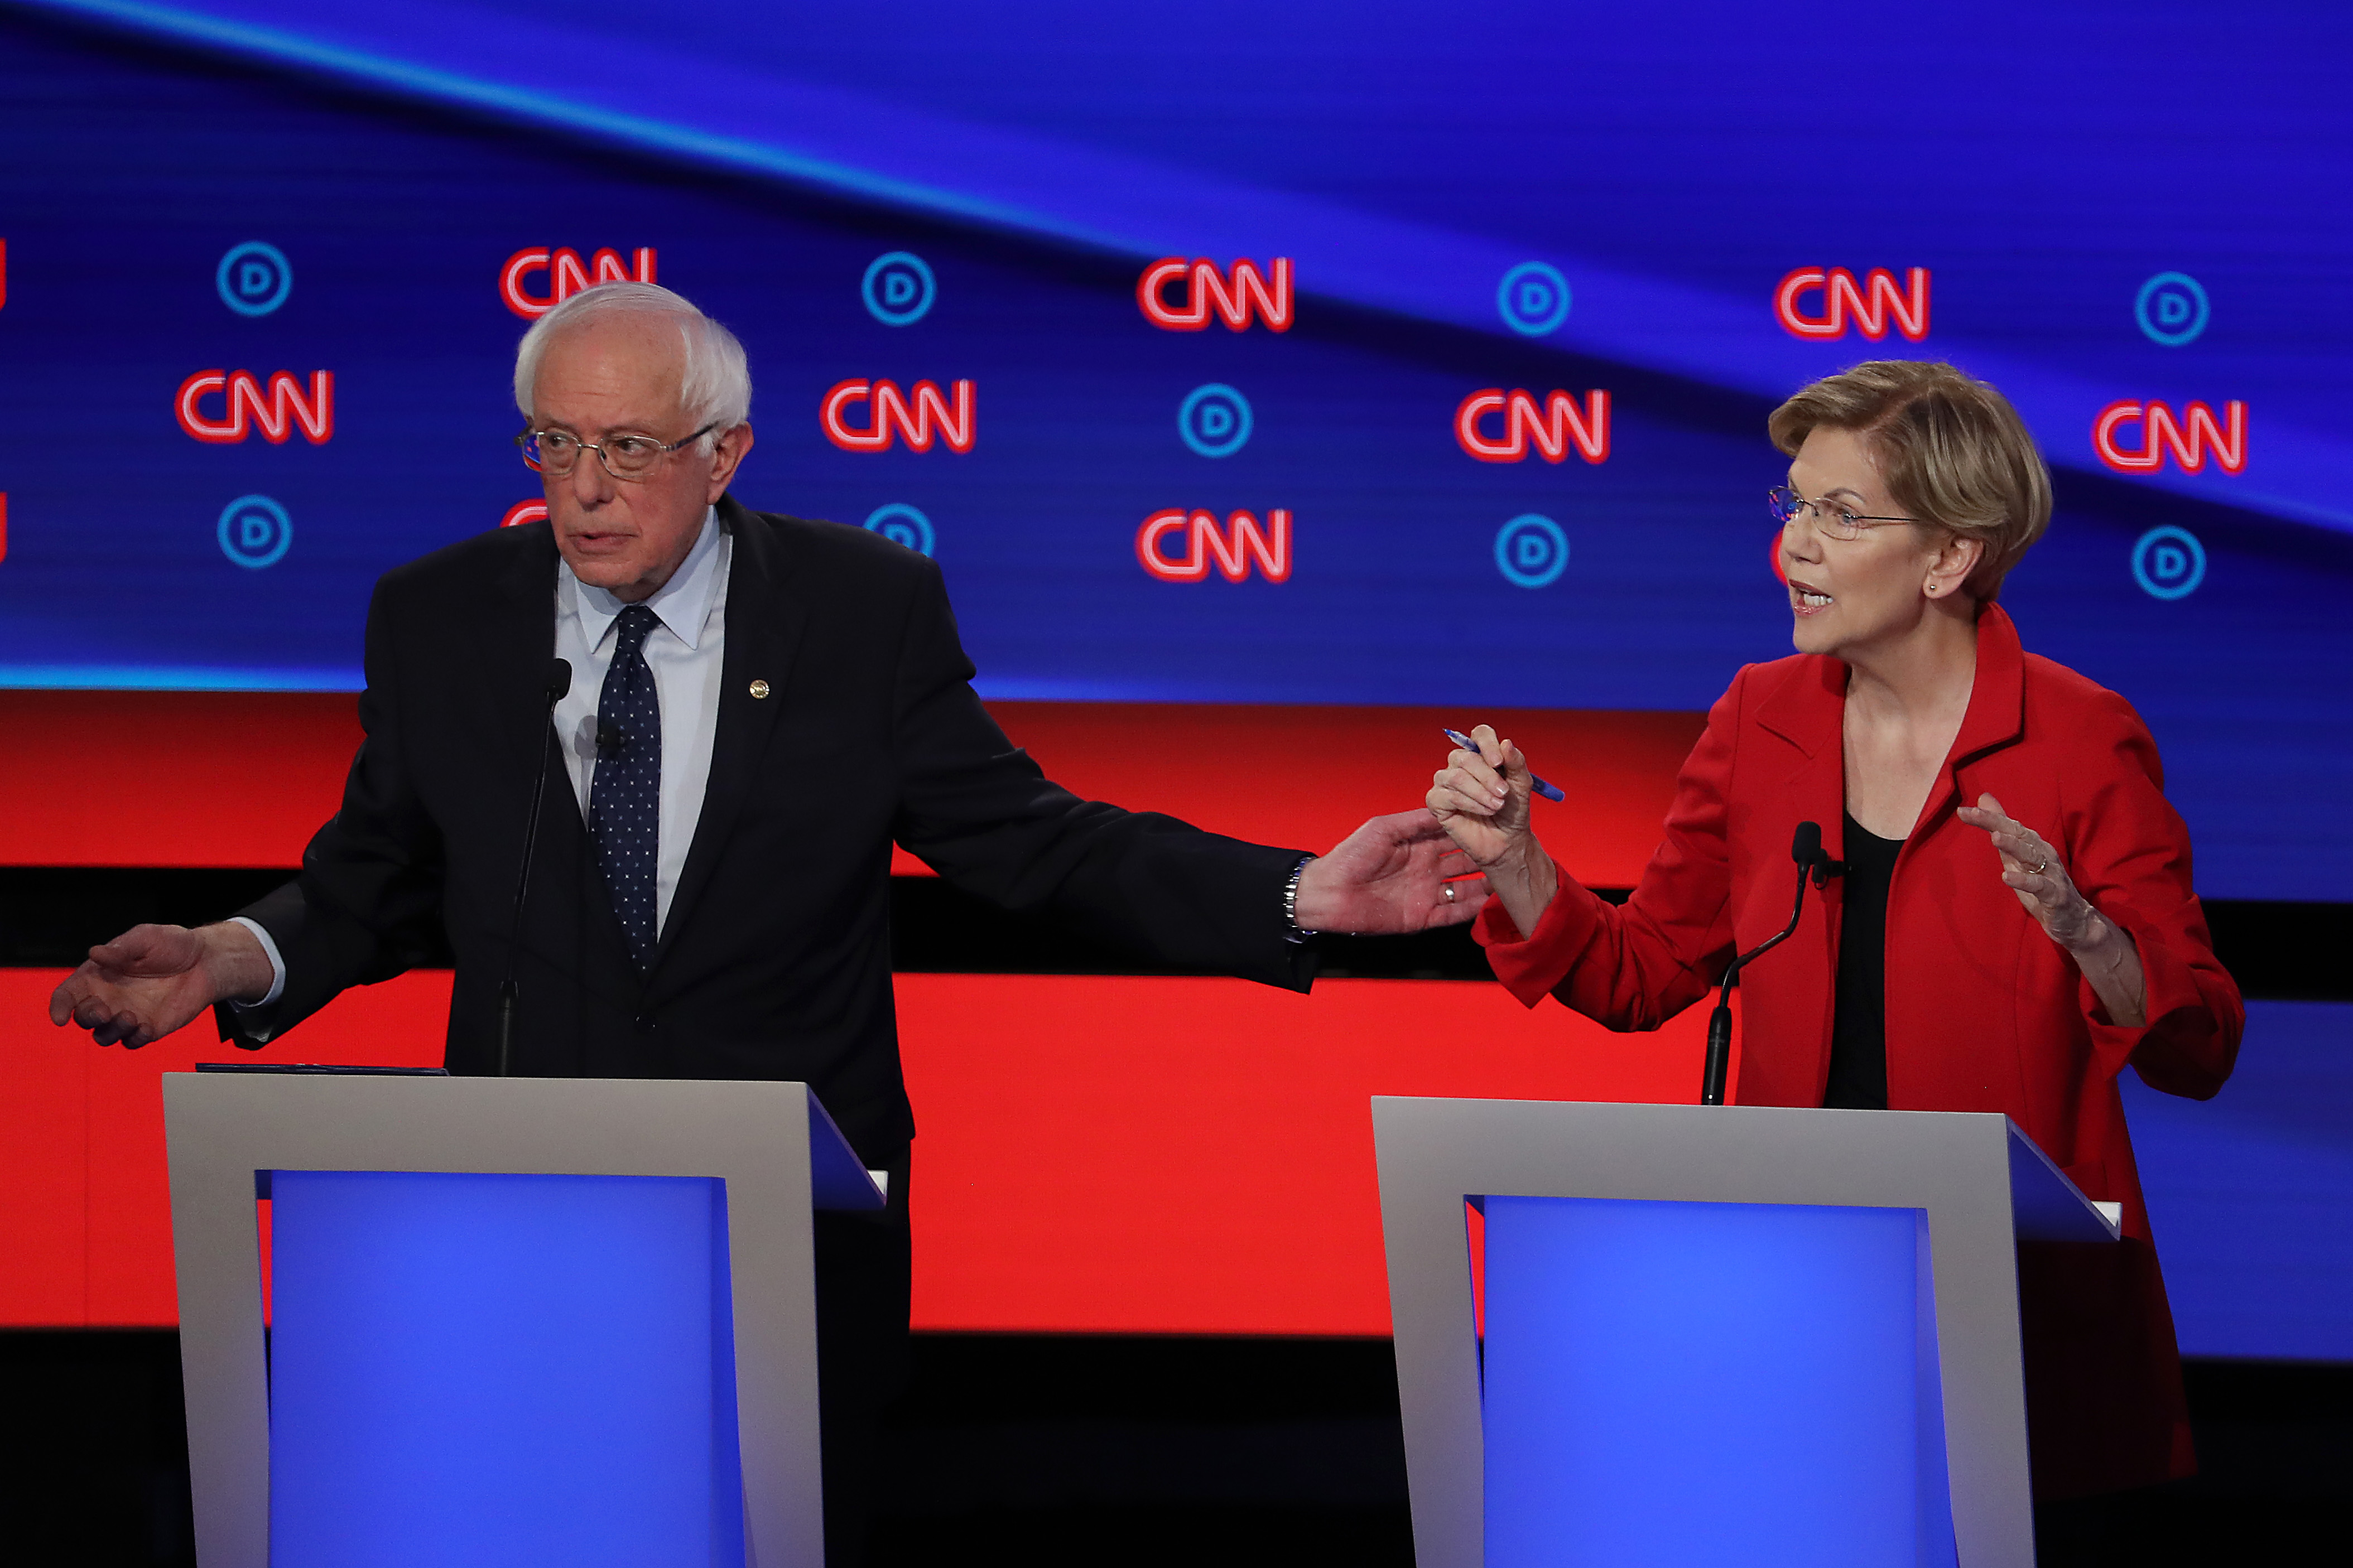 Izzik az amerikai baloldal: Warren szerint Sanders azt mondta, egy nő nem tudja legyőzni Trumpot